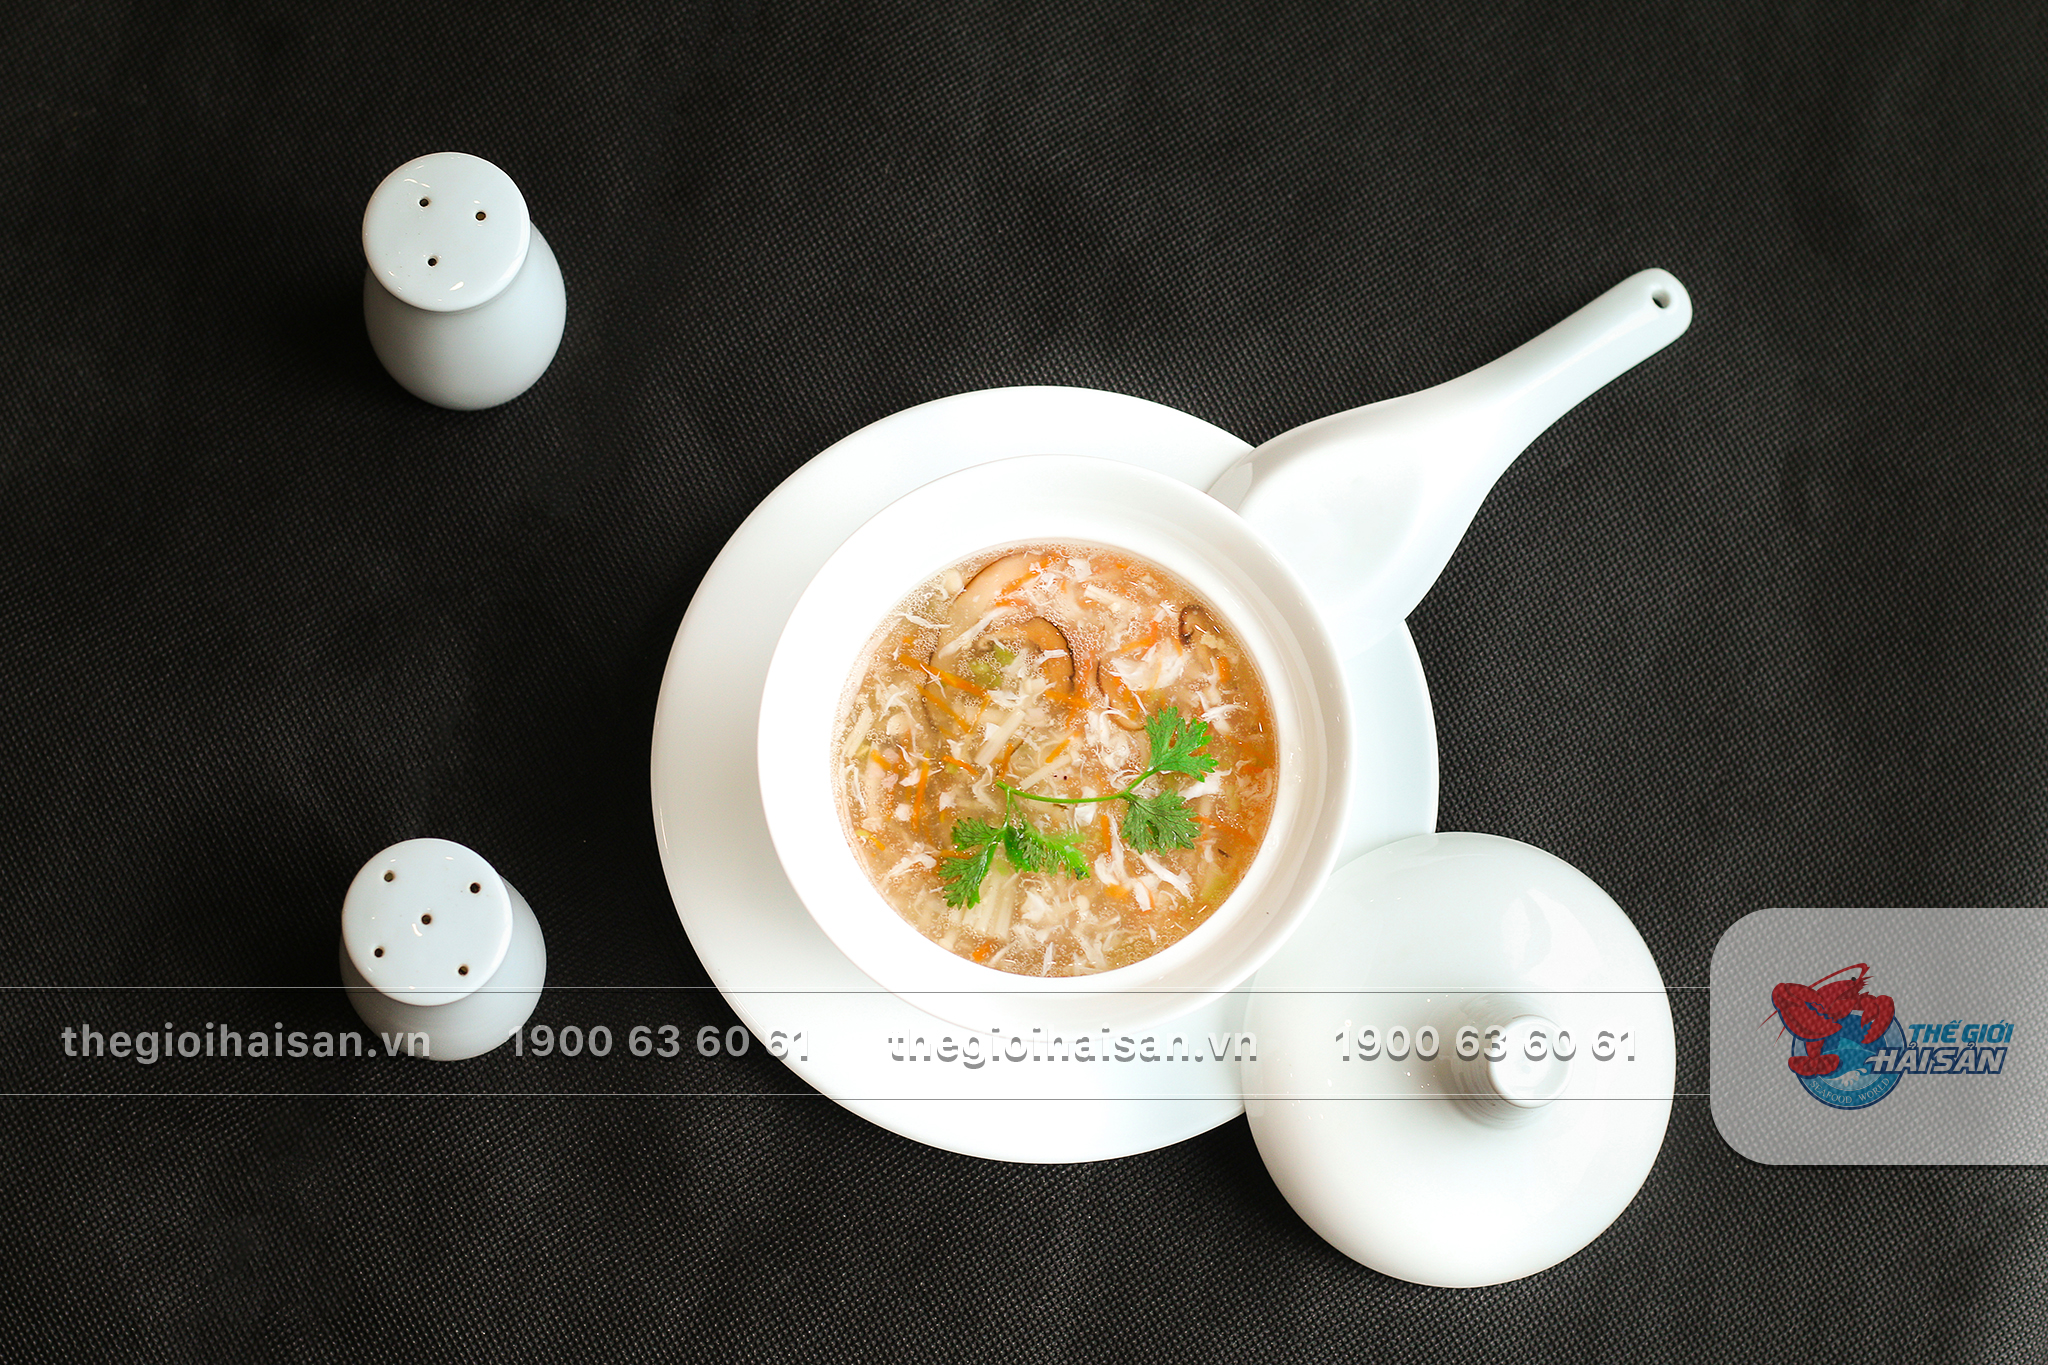 Soup hải sản hấp dẫn cho tiệc nhà hàng tại Thế giới hải sản